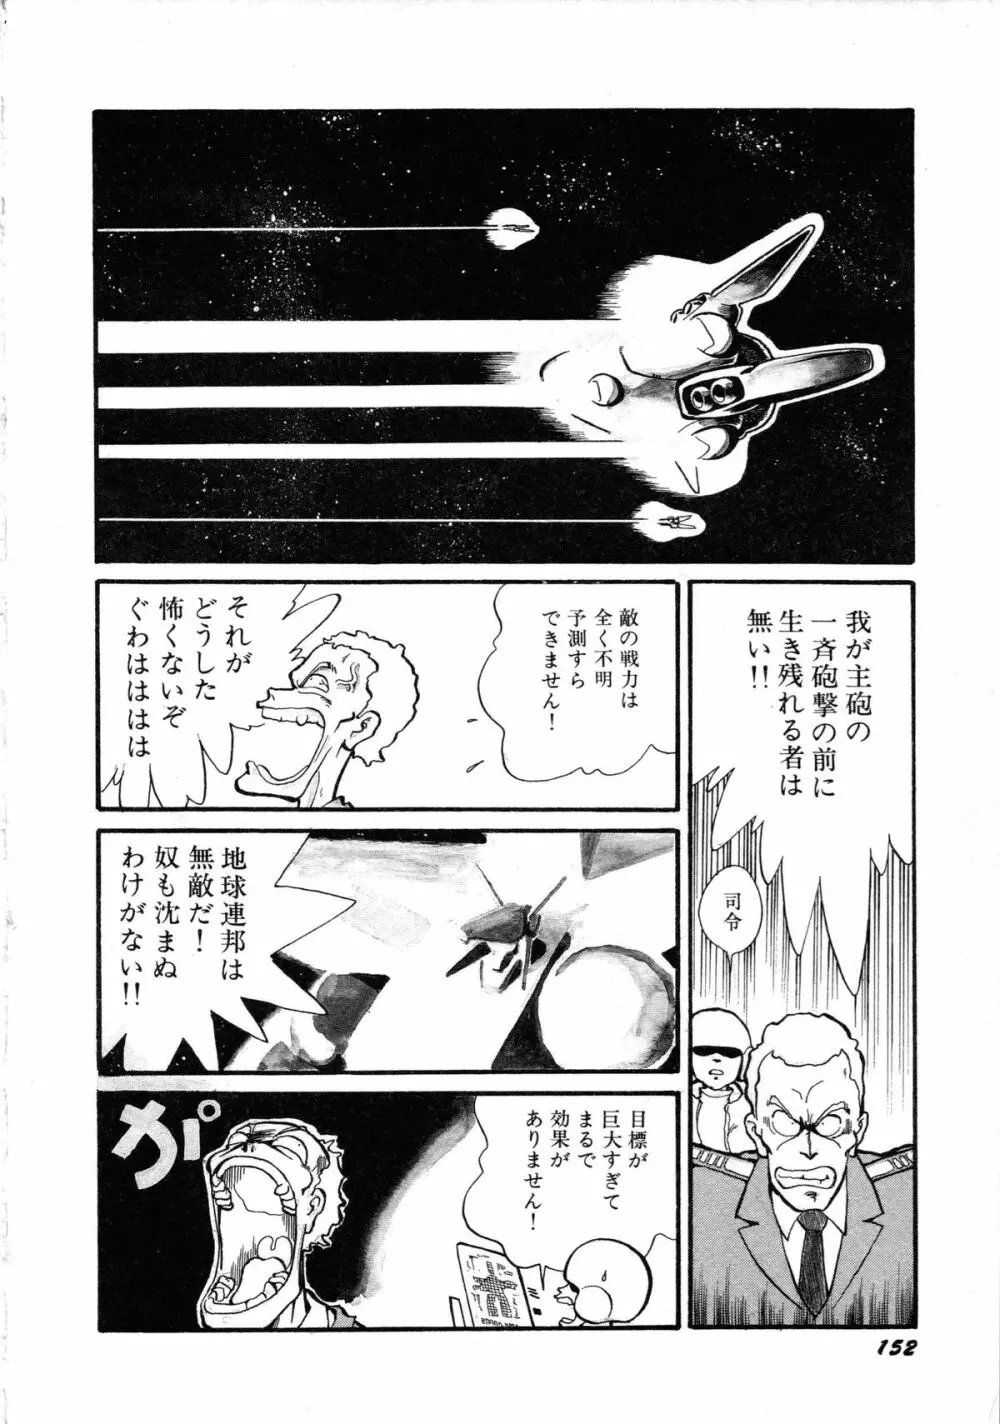 ロボット&美少女傑作選 レモン・ピープル1982-1986 156ページ